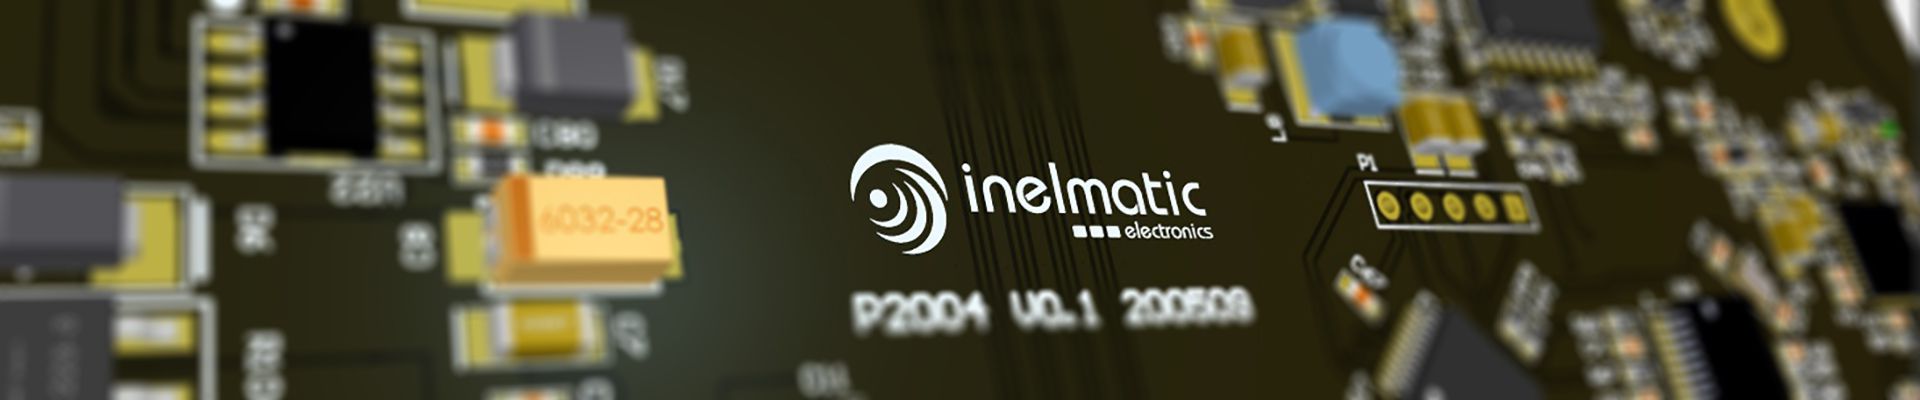 Département électronique Inelmatic - Inelmatic